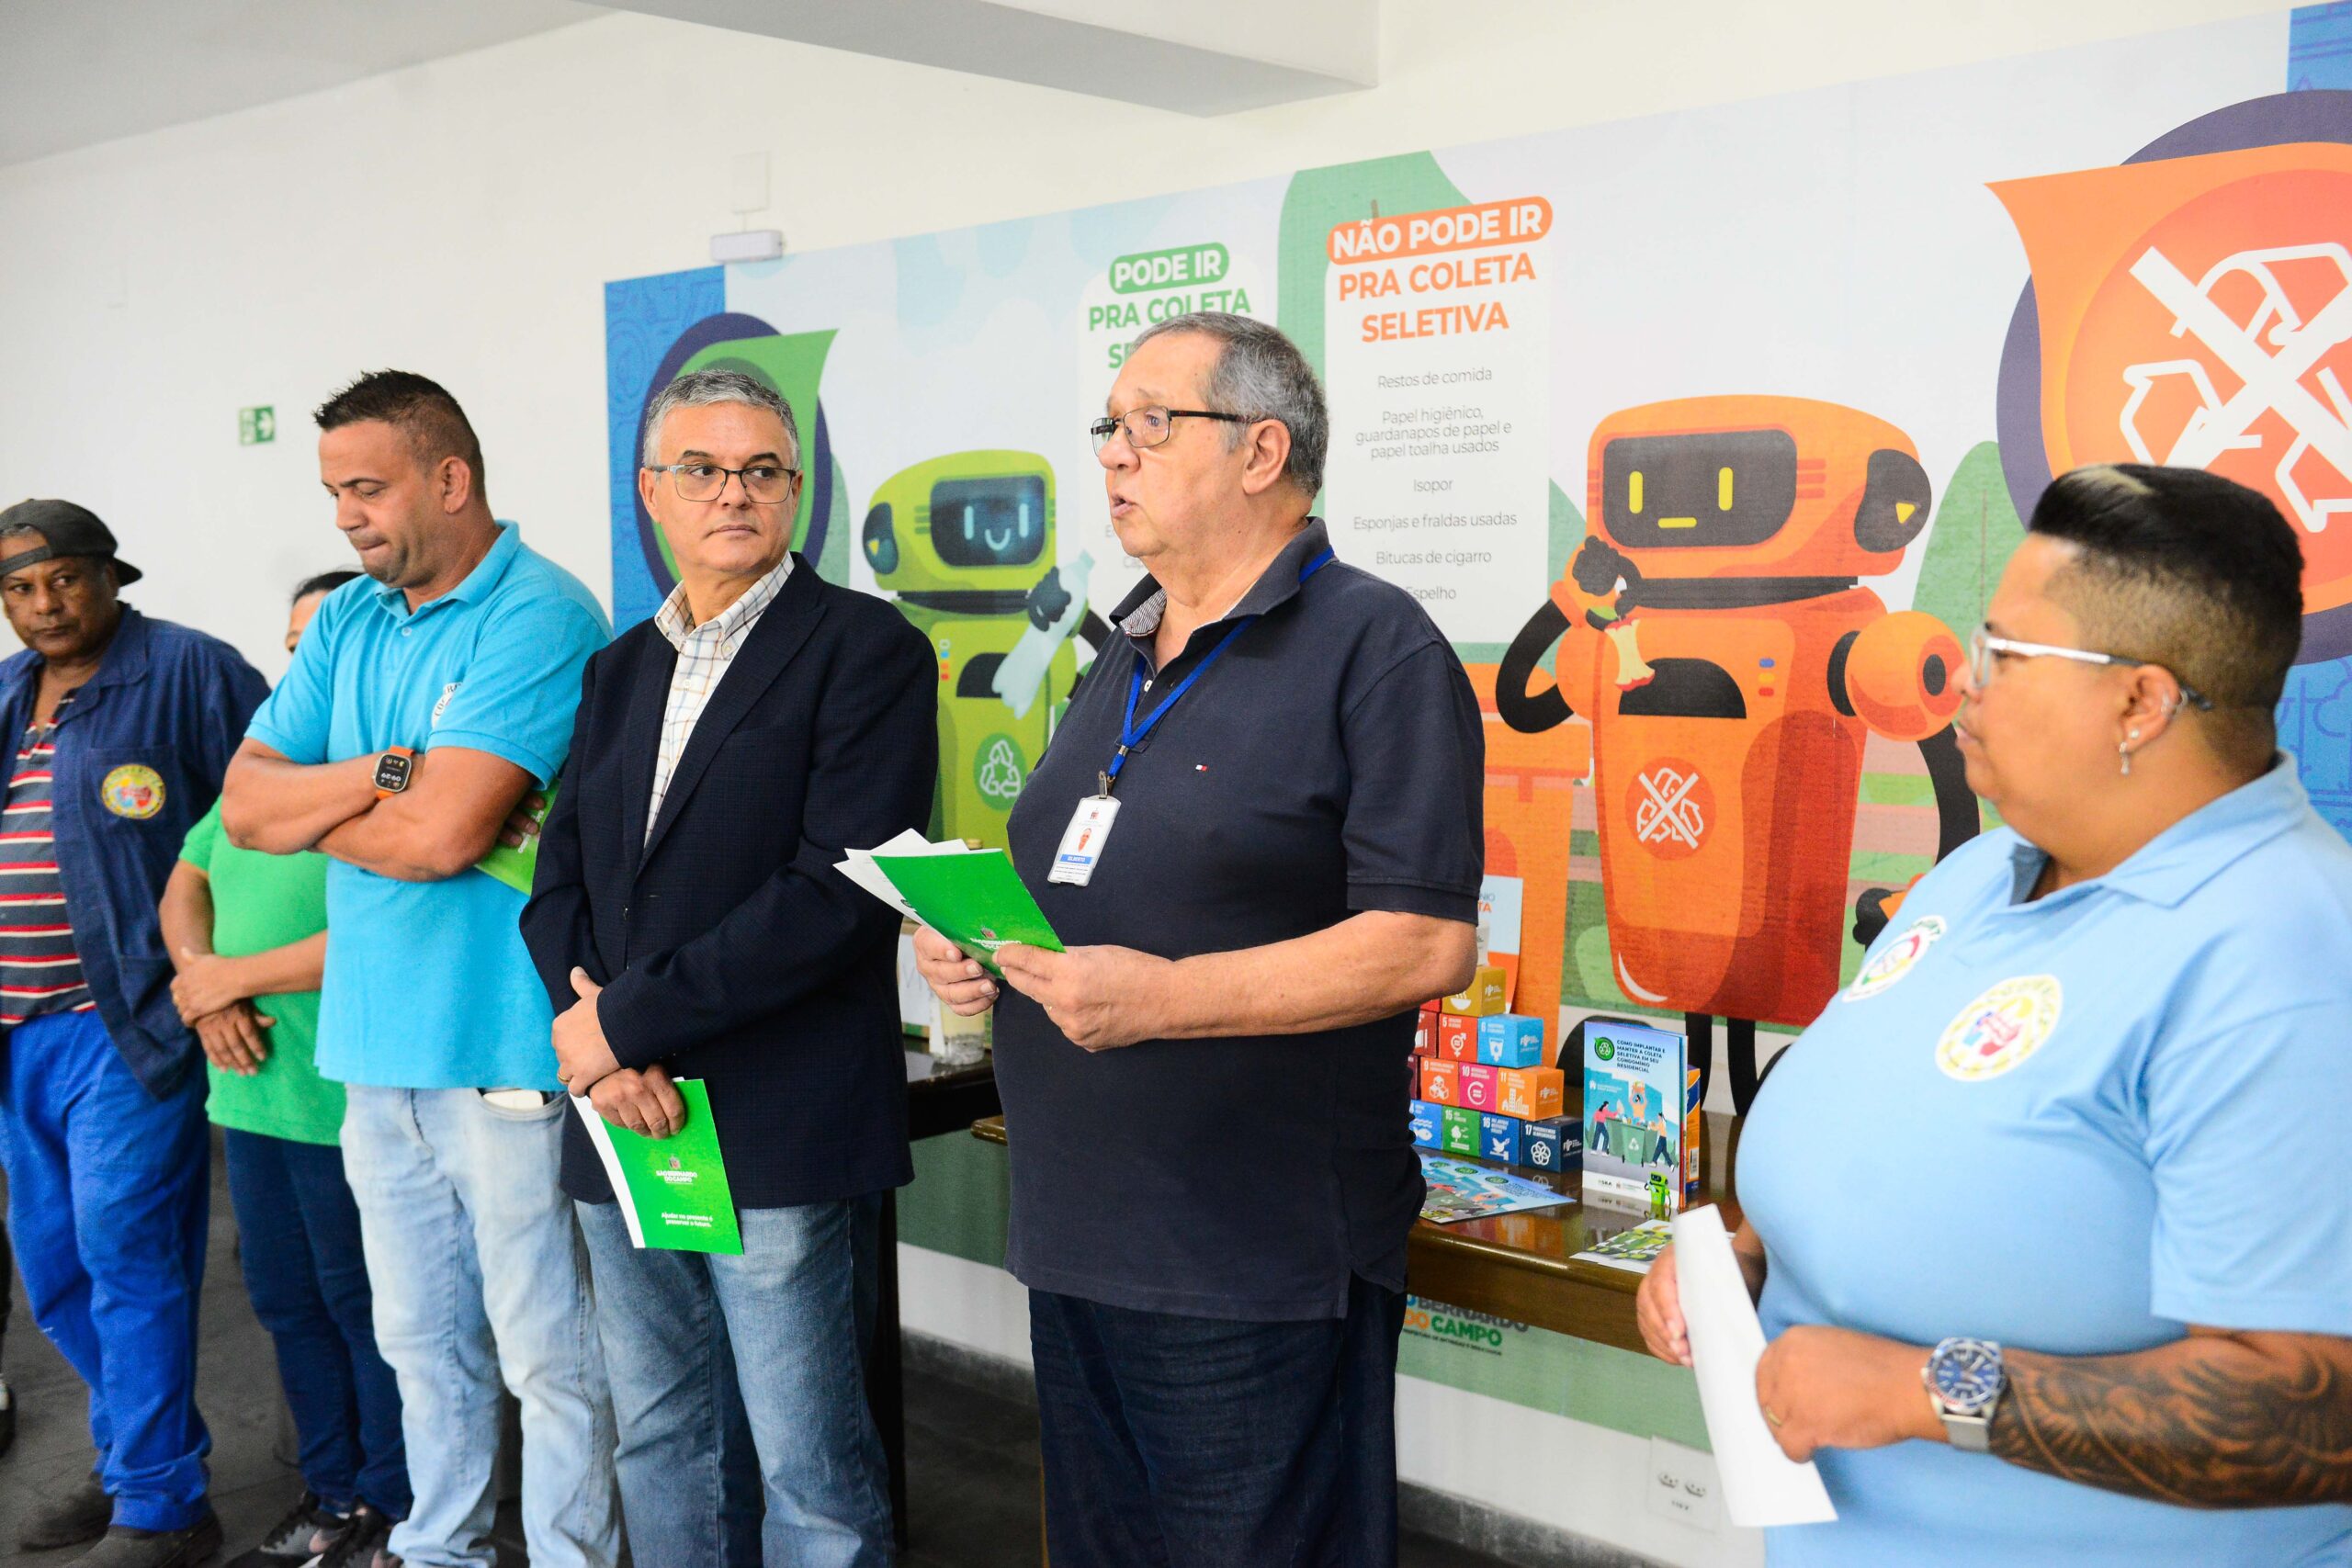 São Bernardo expande campanha de coleta seletiva aos condomínios